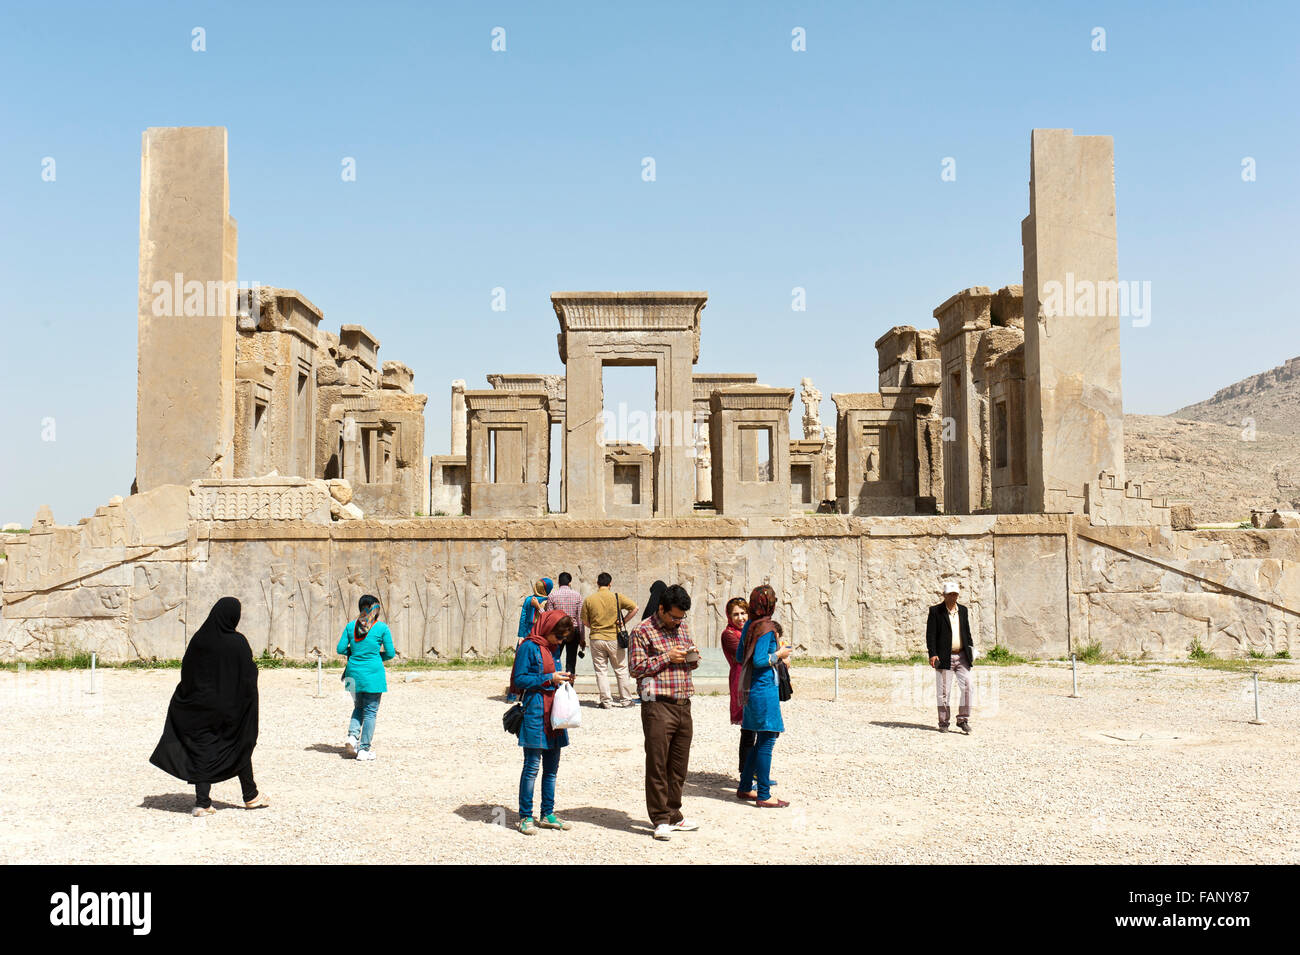 Les touristes, de secours avec les gardiens des portes, les chiffres en ruines, palais de Xerxès, ville de la Perse antique de Persépolis Banque D'Images